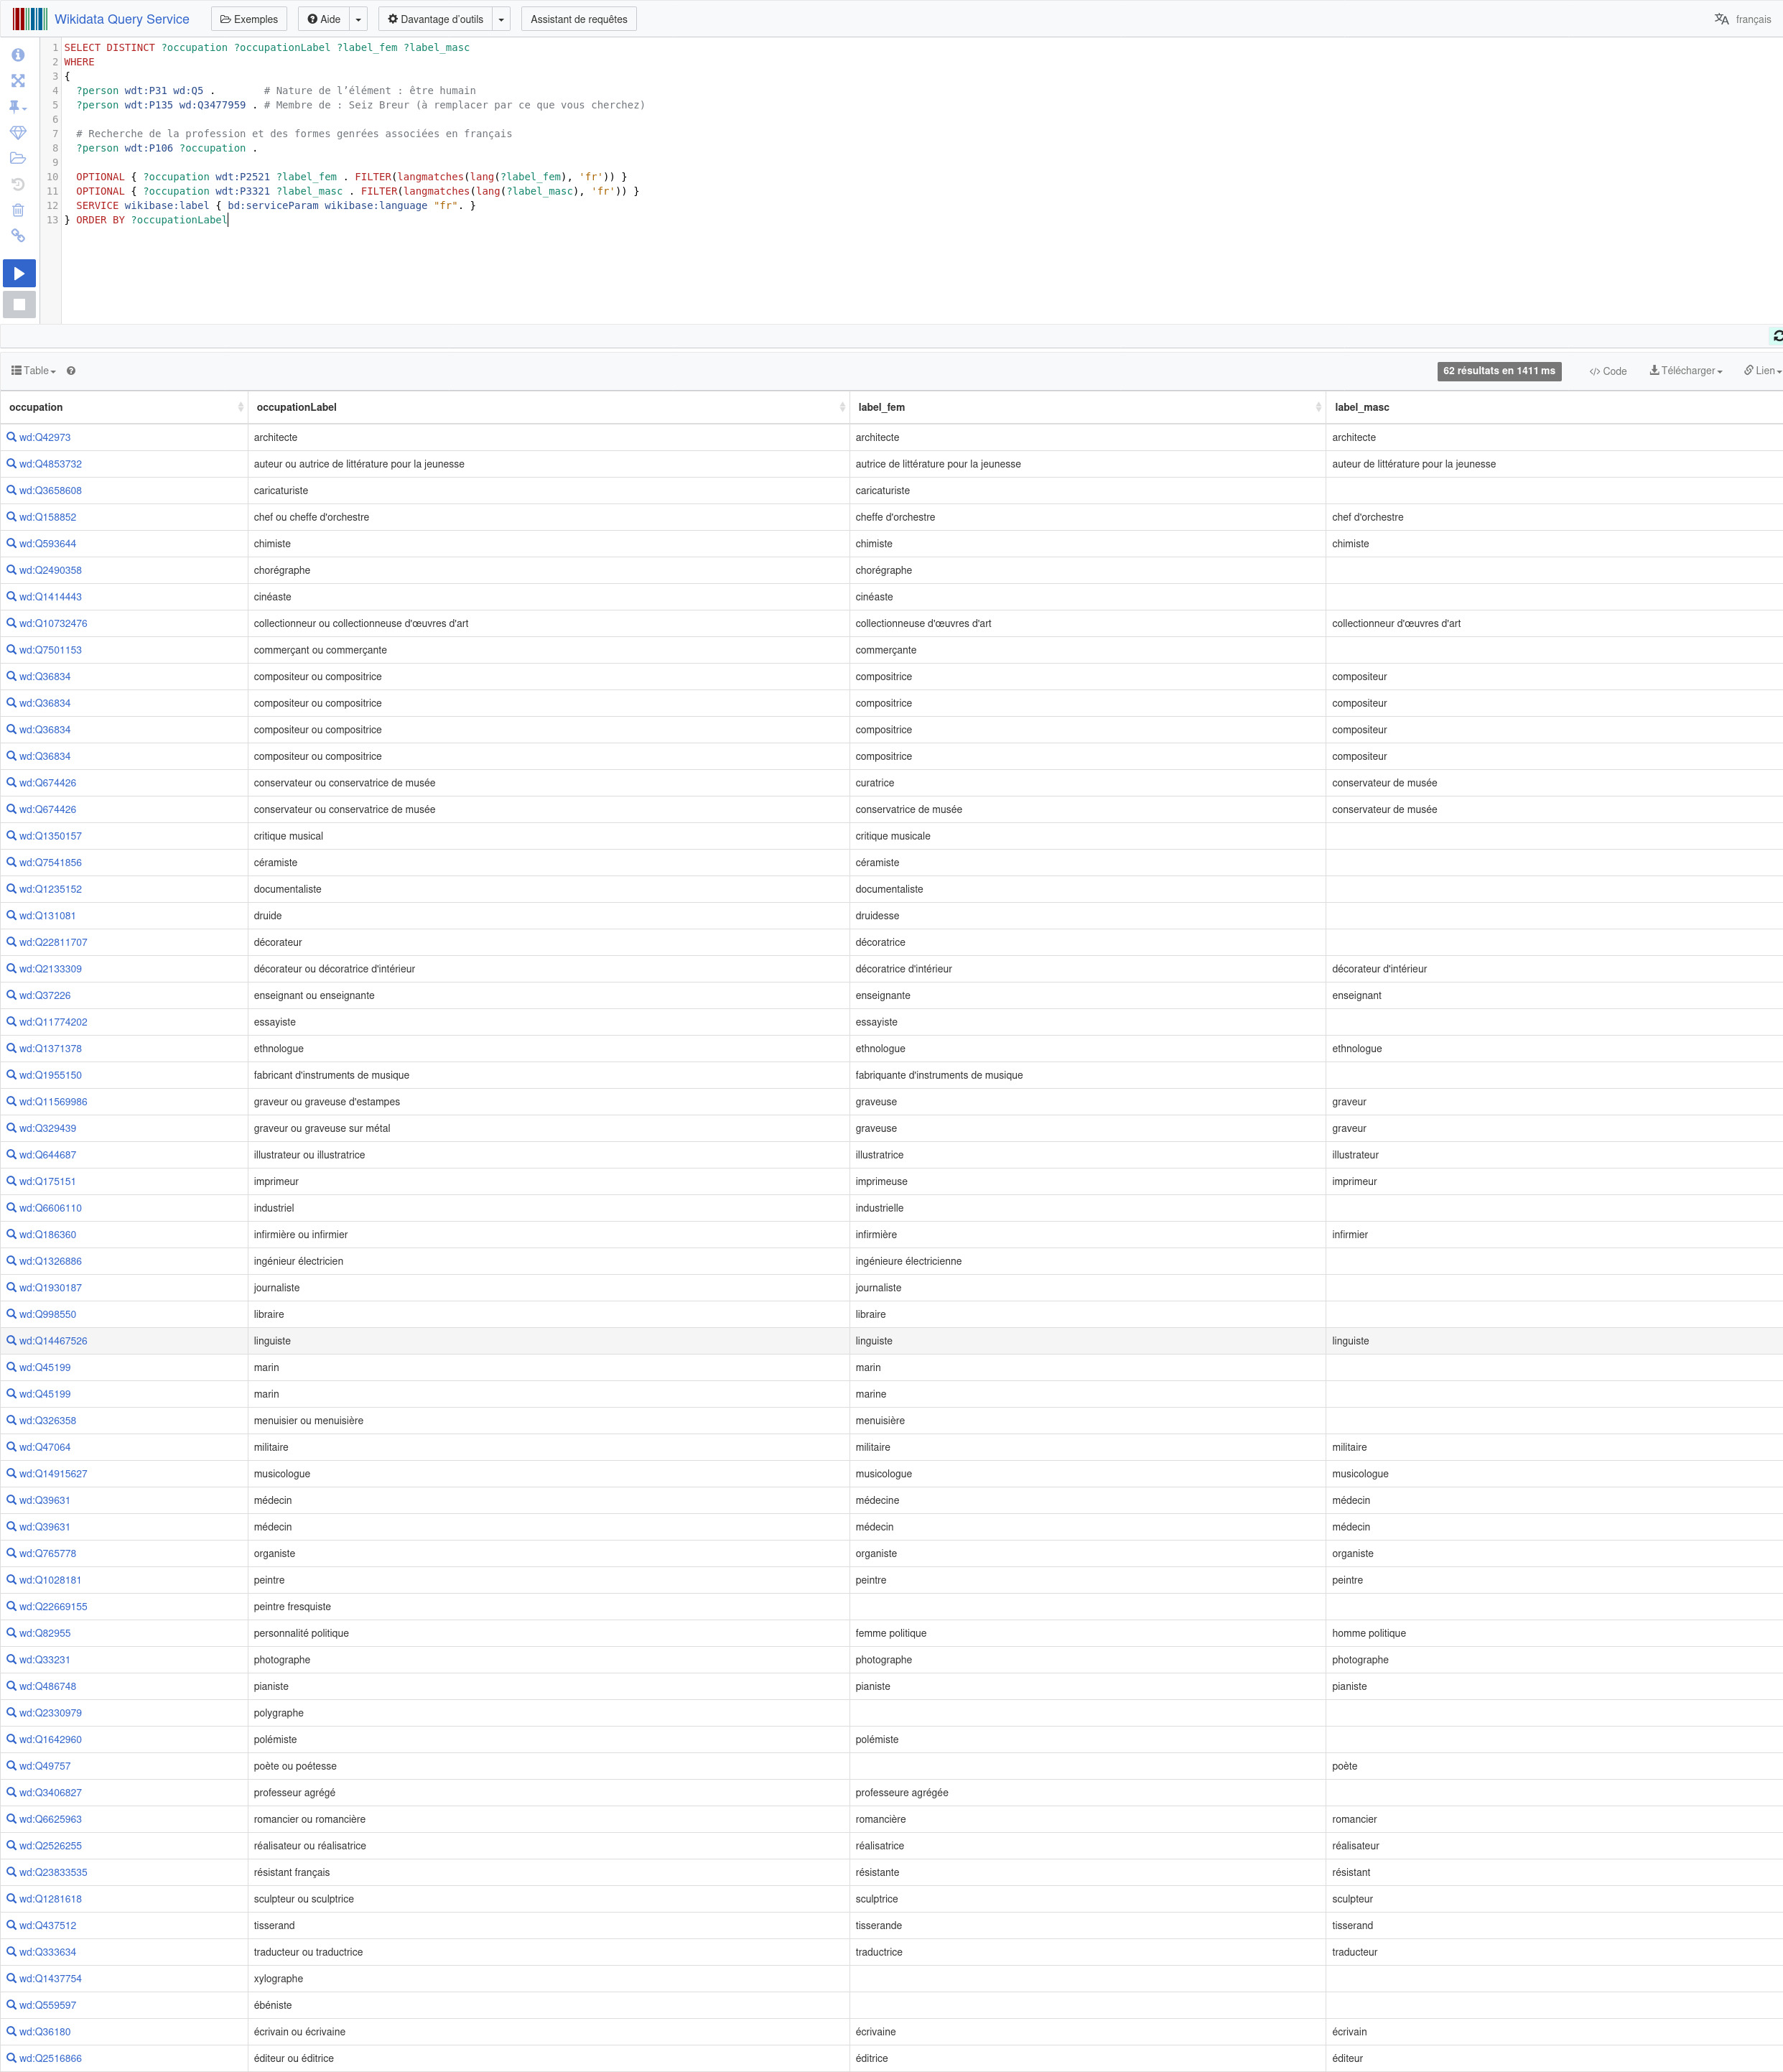 Capture d’écran du Wikidata Query Service avec la requête ci-dessus et le début des résultats, où l'on voit qu'il manque quelques libellés féminins et pas mal de libellés masculins.